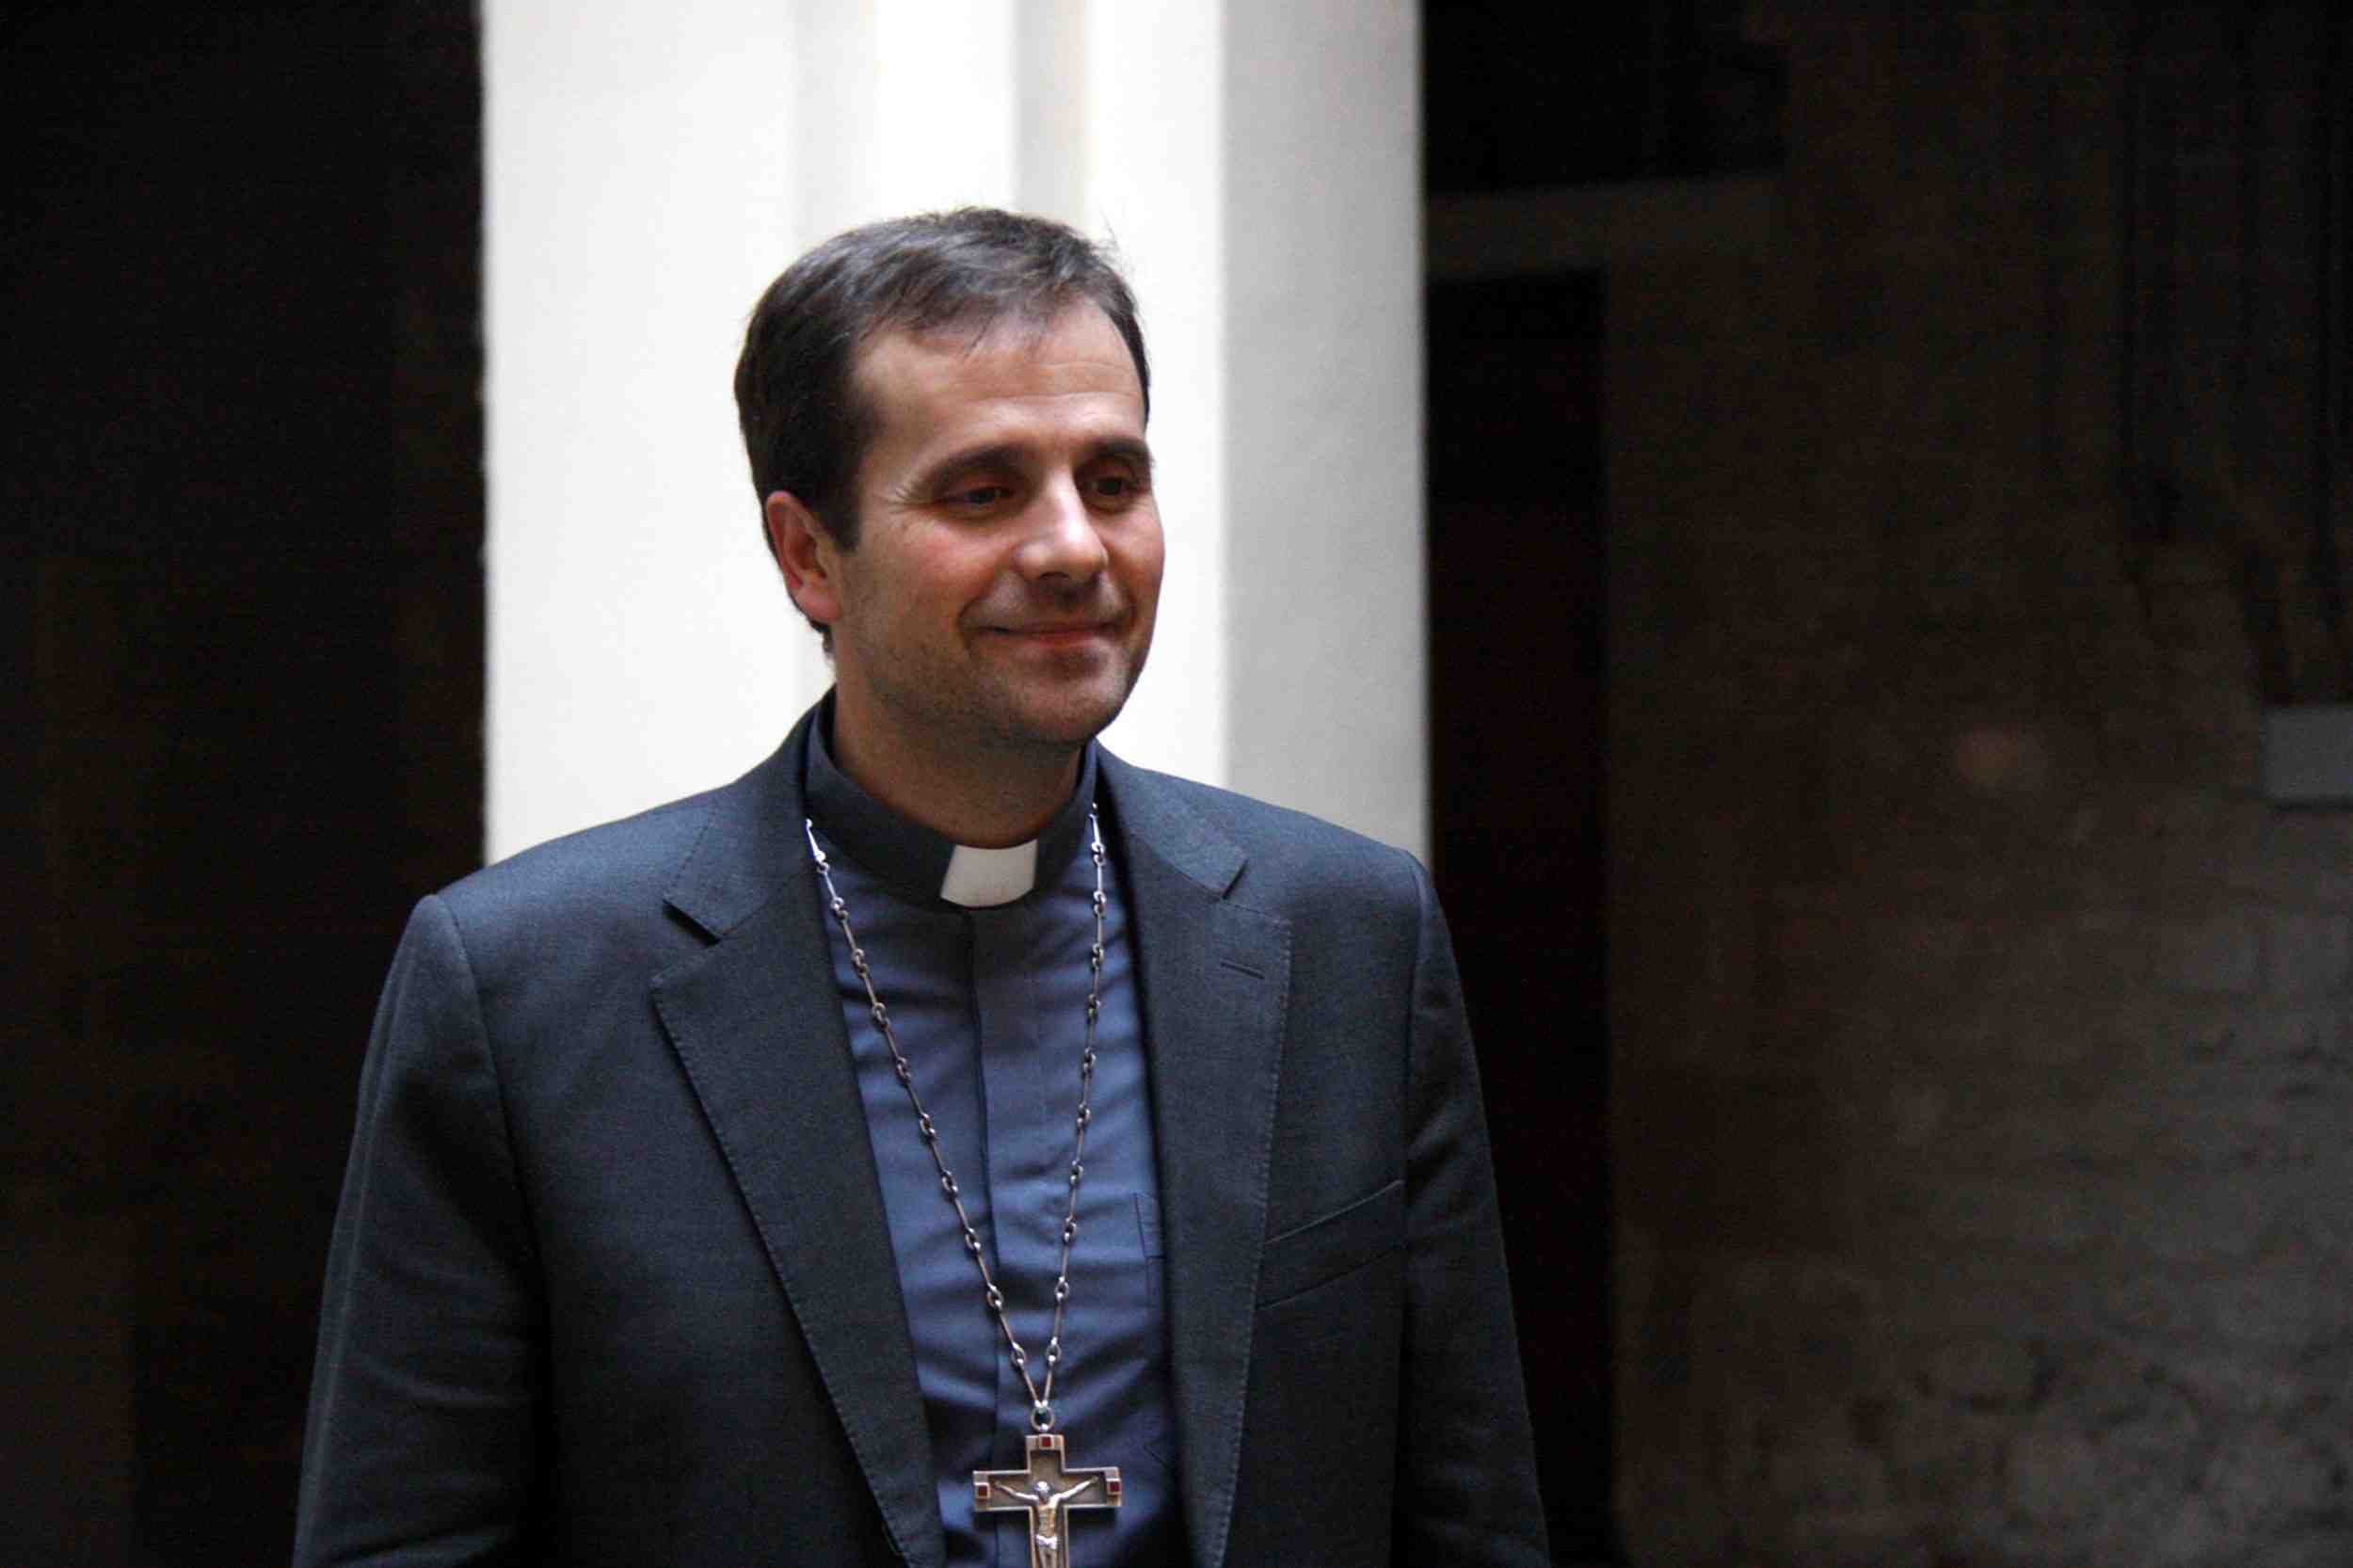 El bisbe de Solsona demana disculpes després d'una setmana de polèmica